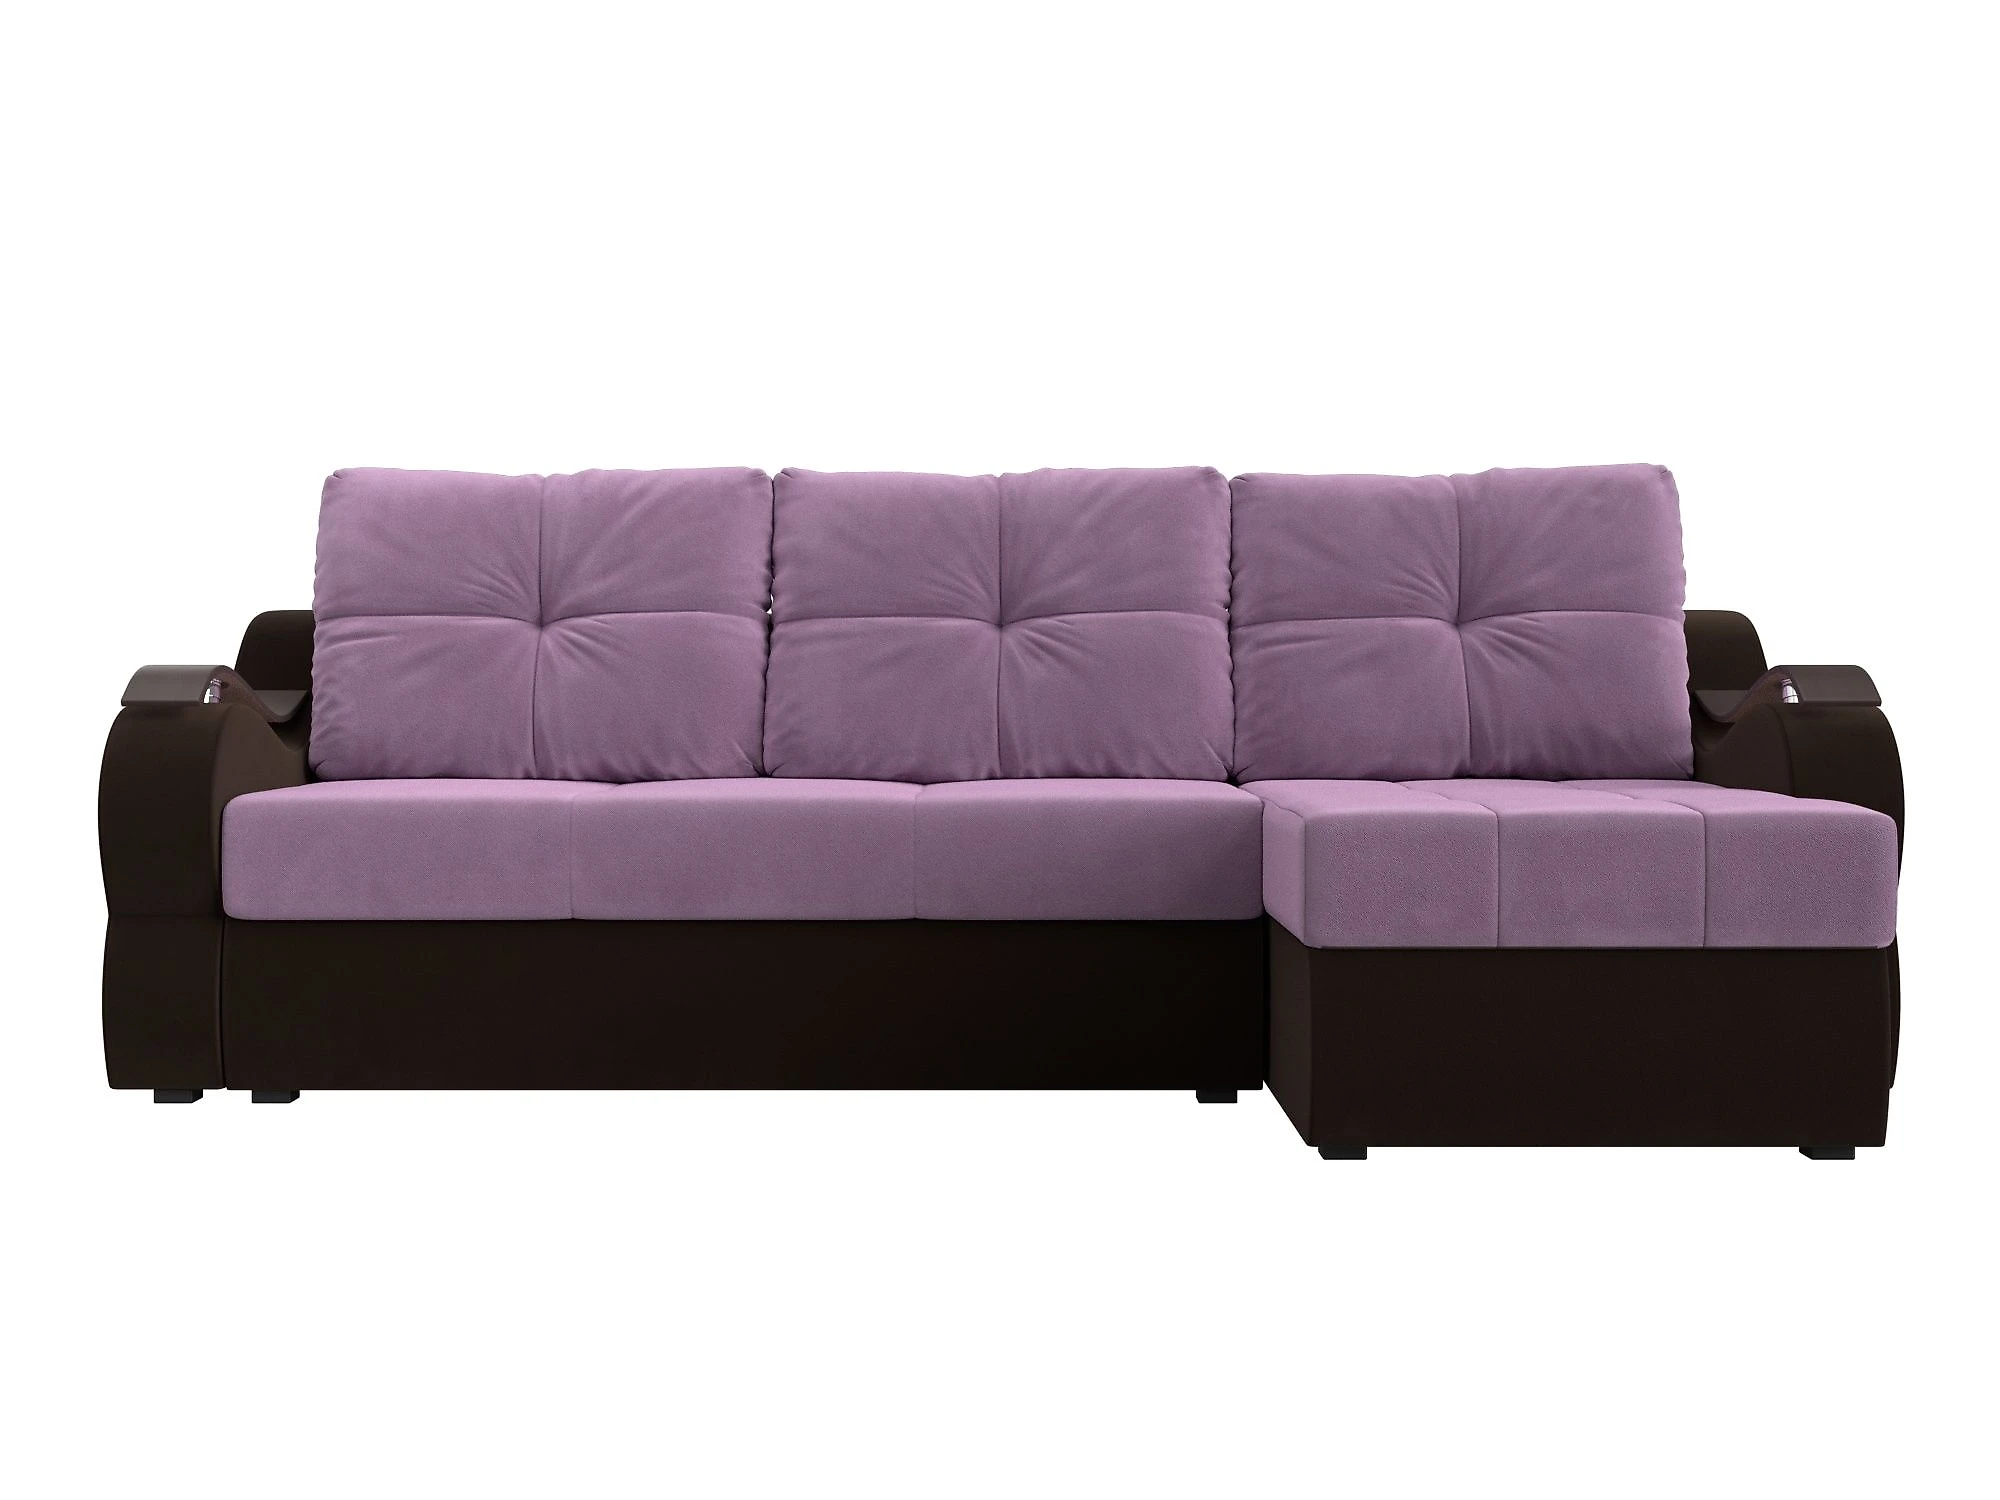 угловой диван для детской Меркурий Дизайн 23